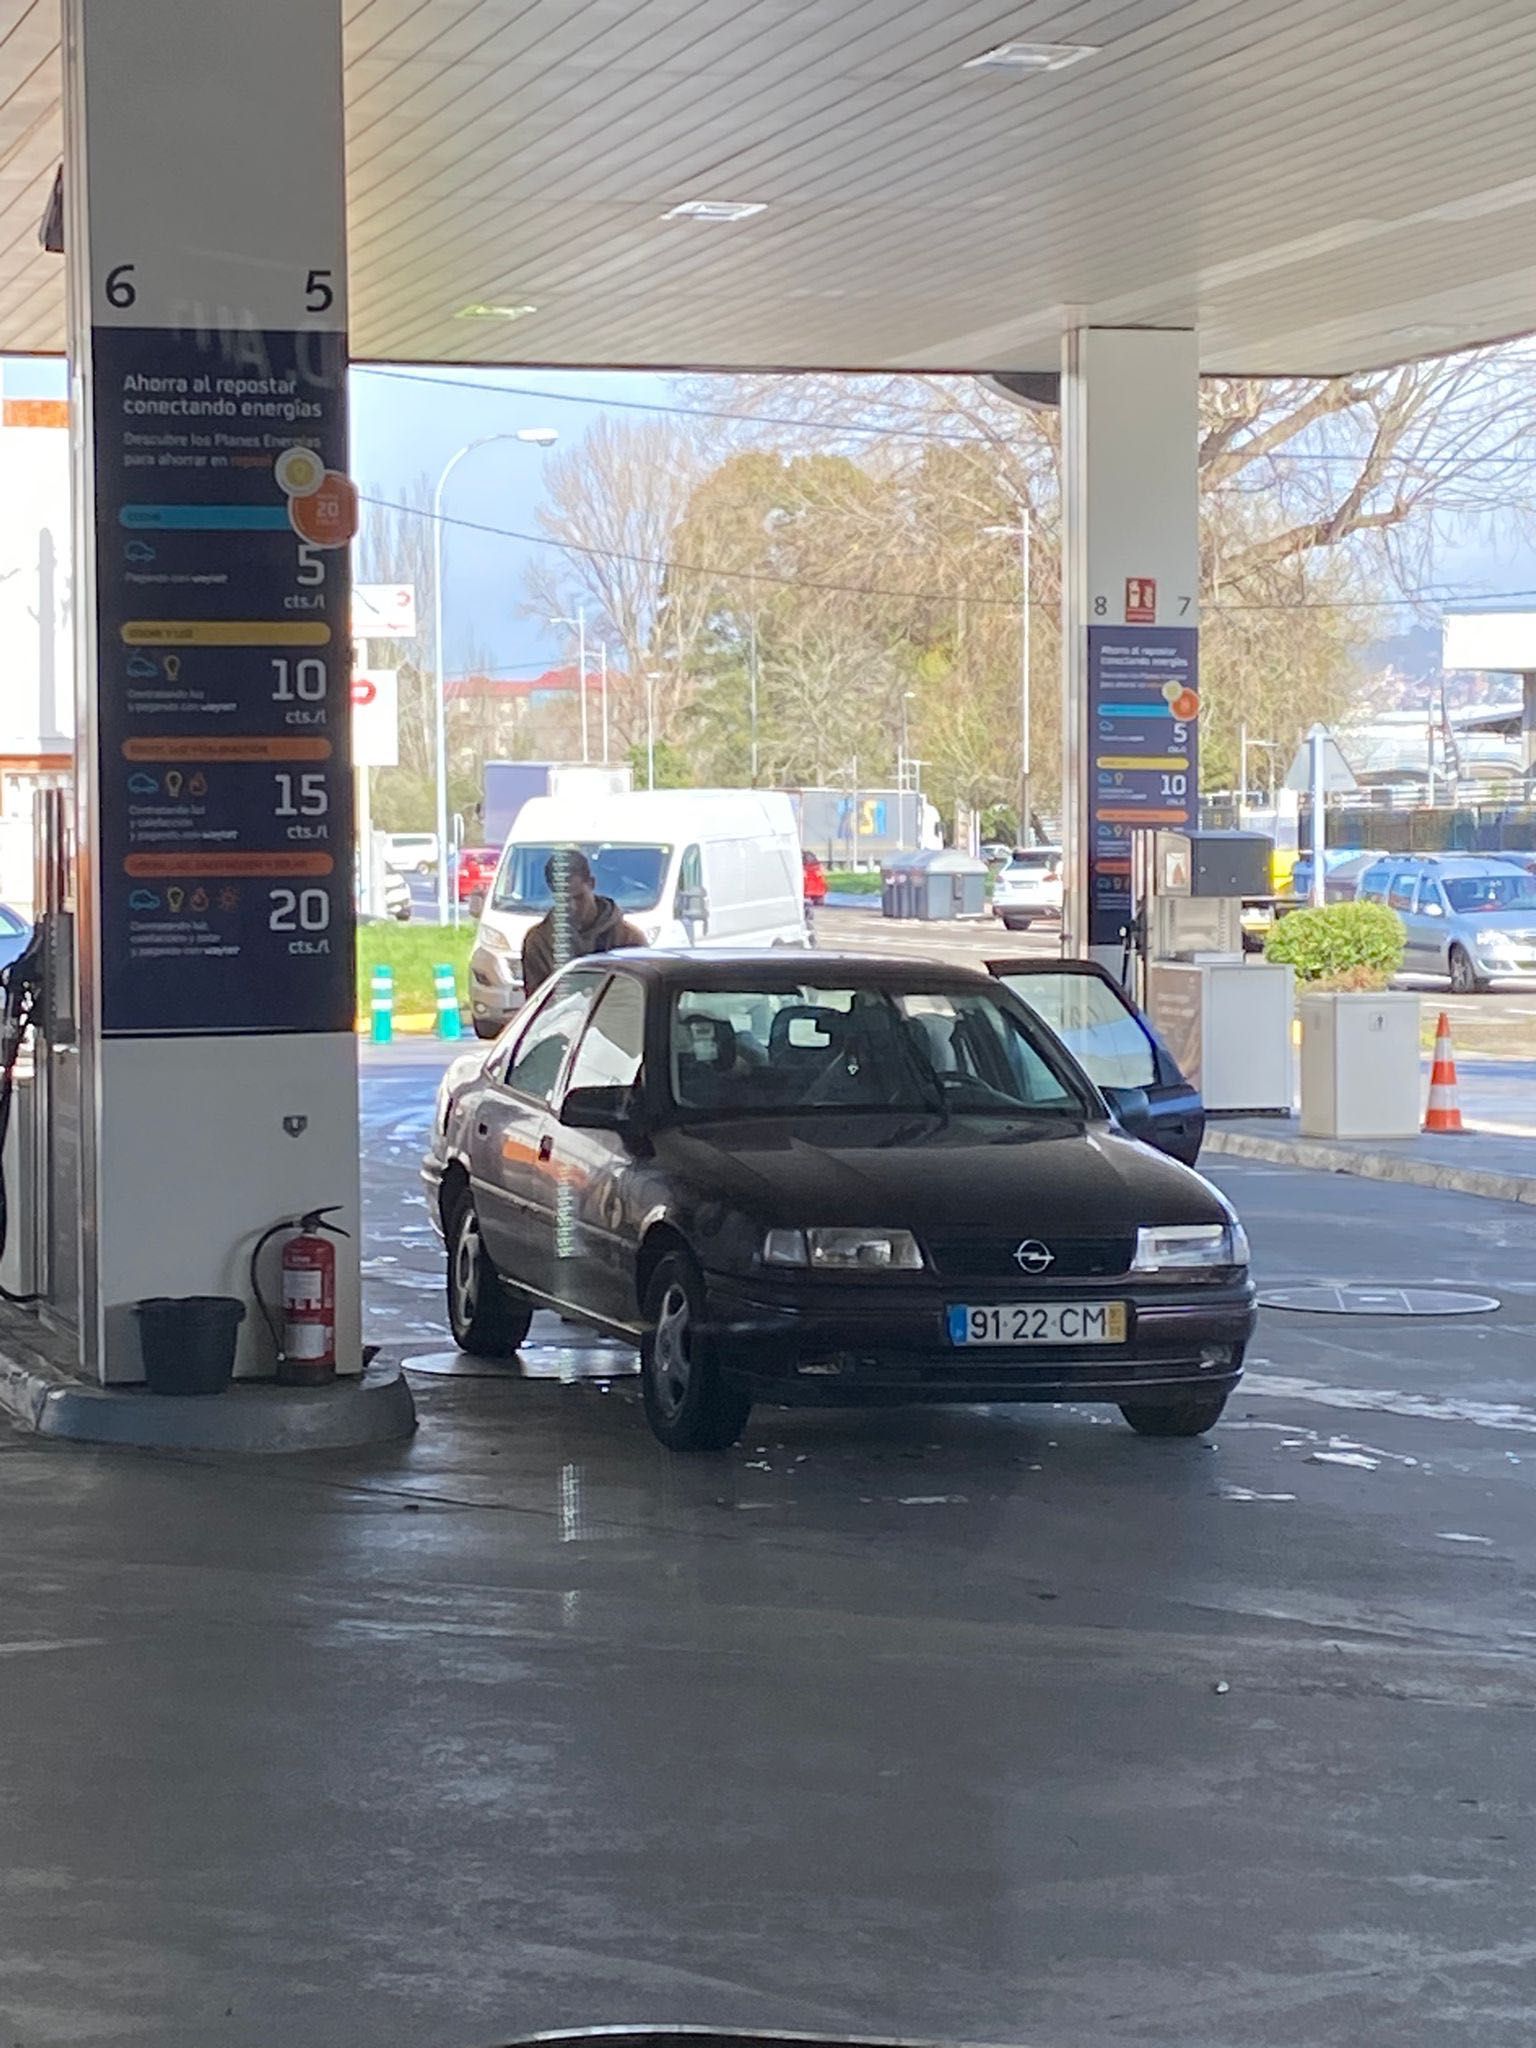 Opel Vecta 1993 gasolina 1.4